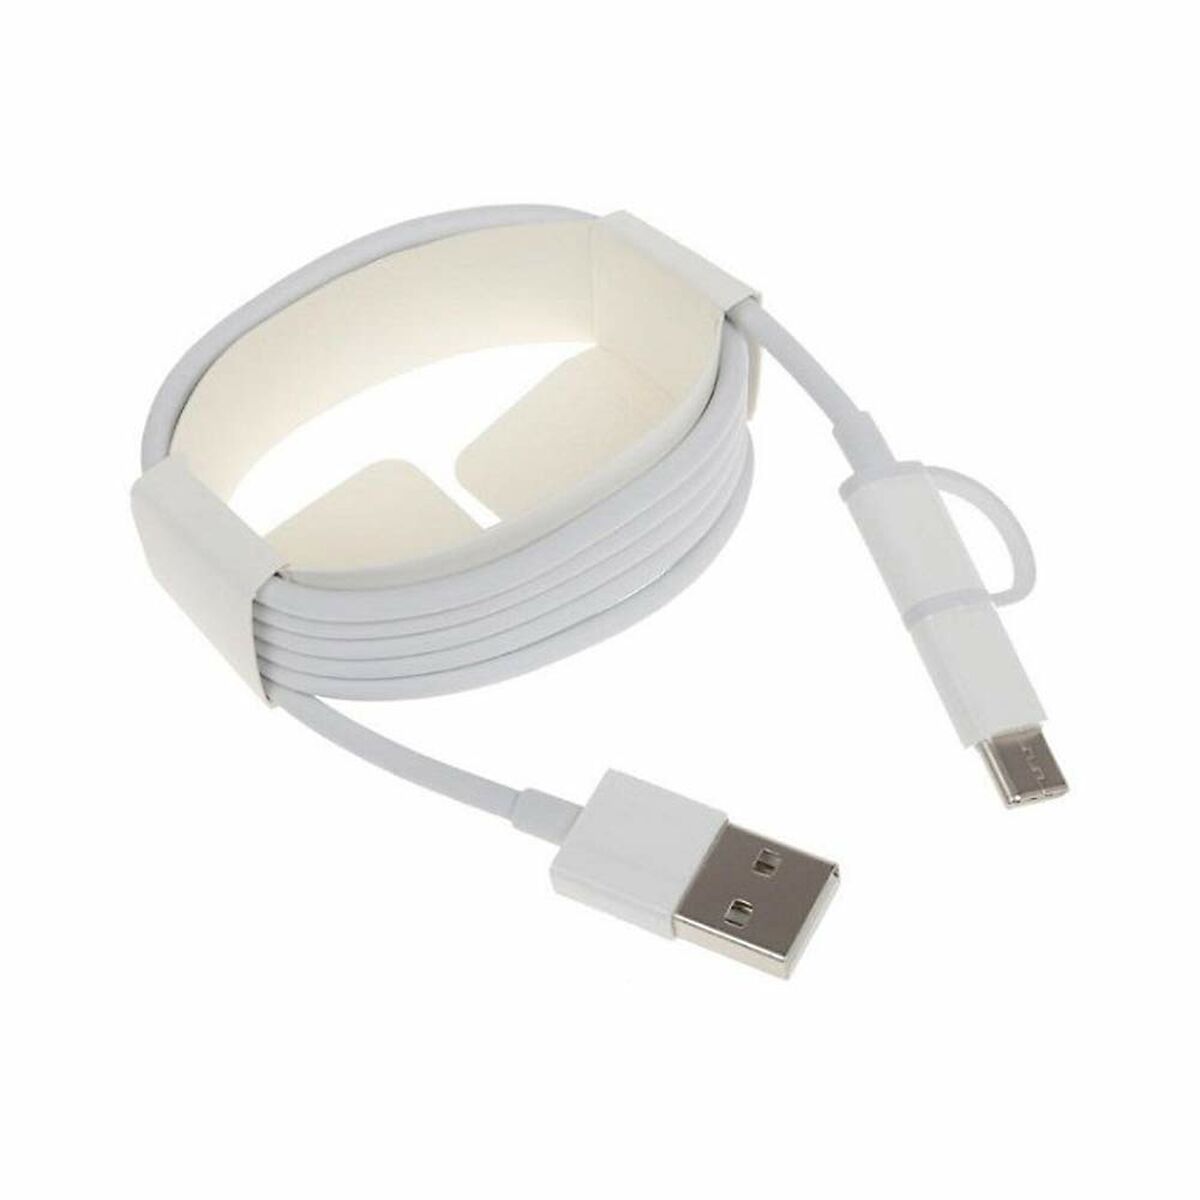 Câble Micro USB Xiaomi Mi 2-in-1 USB Cable (Micro USB to Type C) 100cm Blanc 1 m